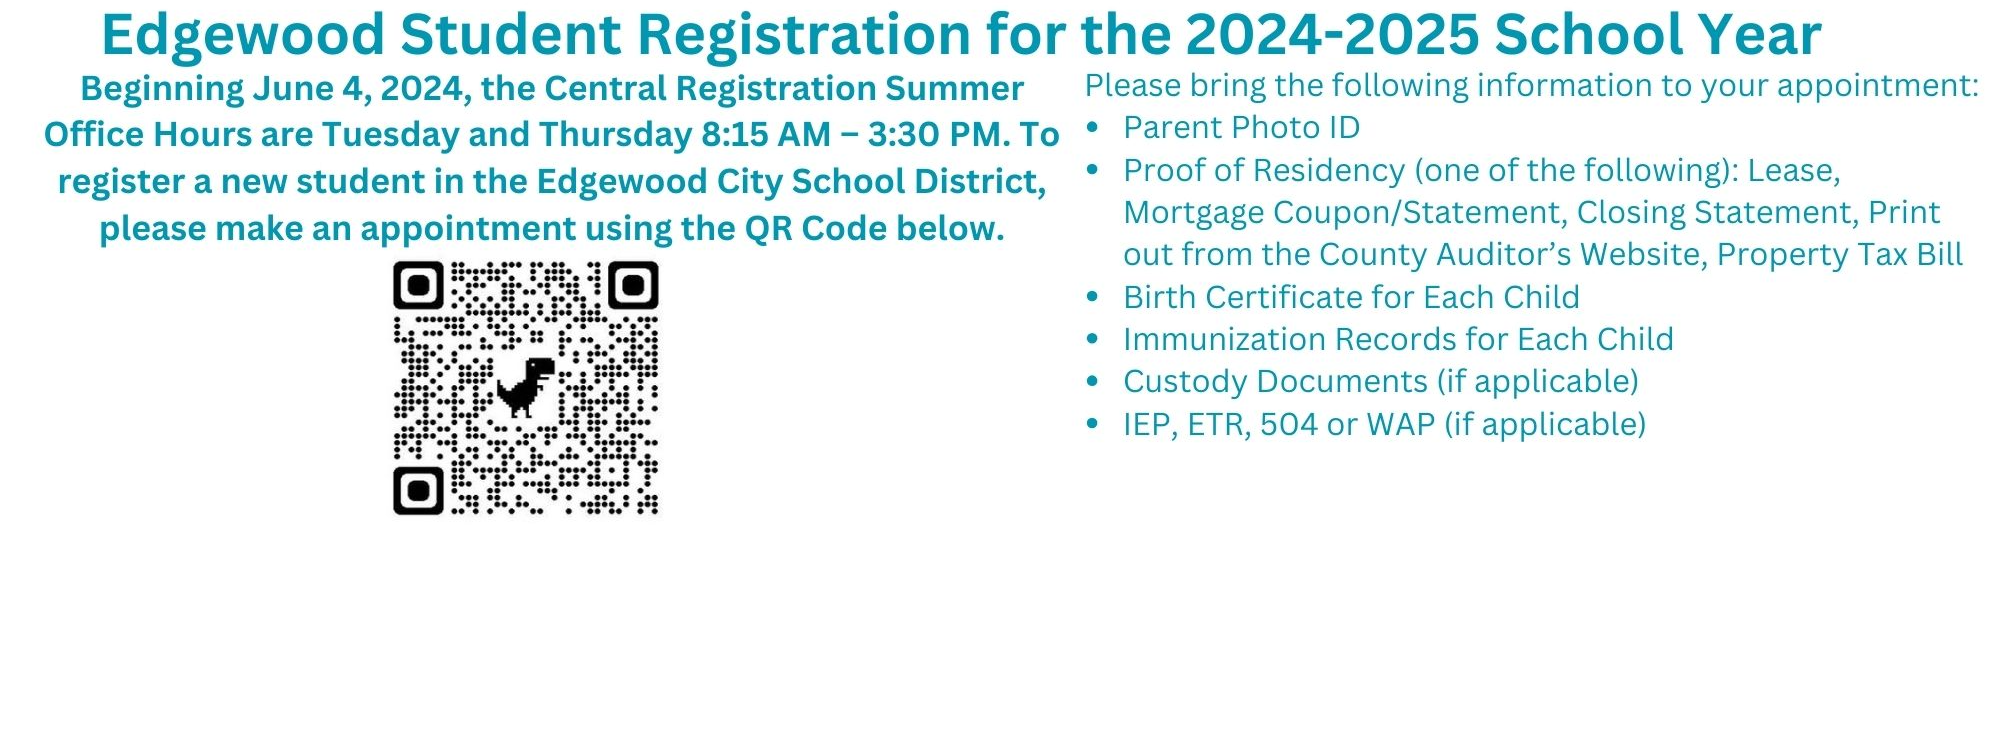 details of summer registration hours 